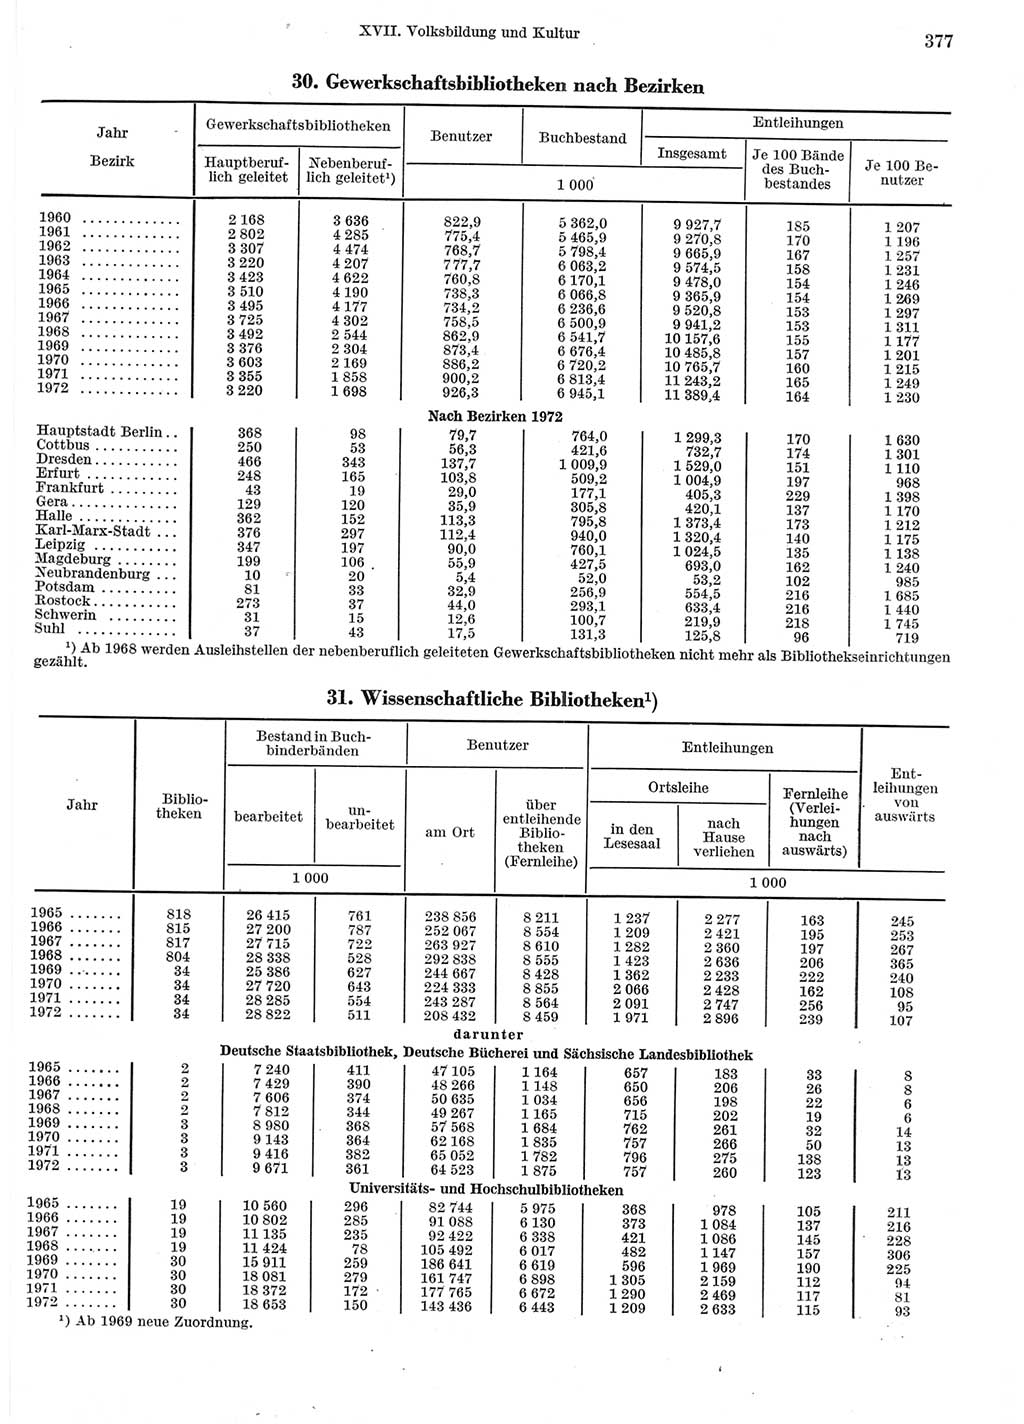 Statistisches Jahrbuch der Deutschen Demokratischen Republik (DDR) 1973, Seite 377 (Stat. Jb. DDR 1973, S. 377)